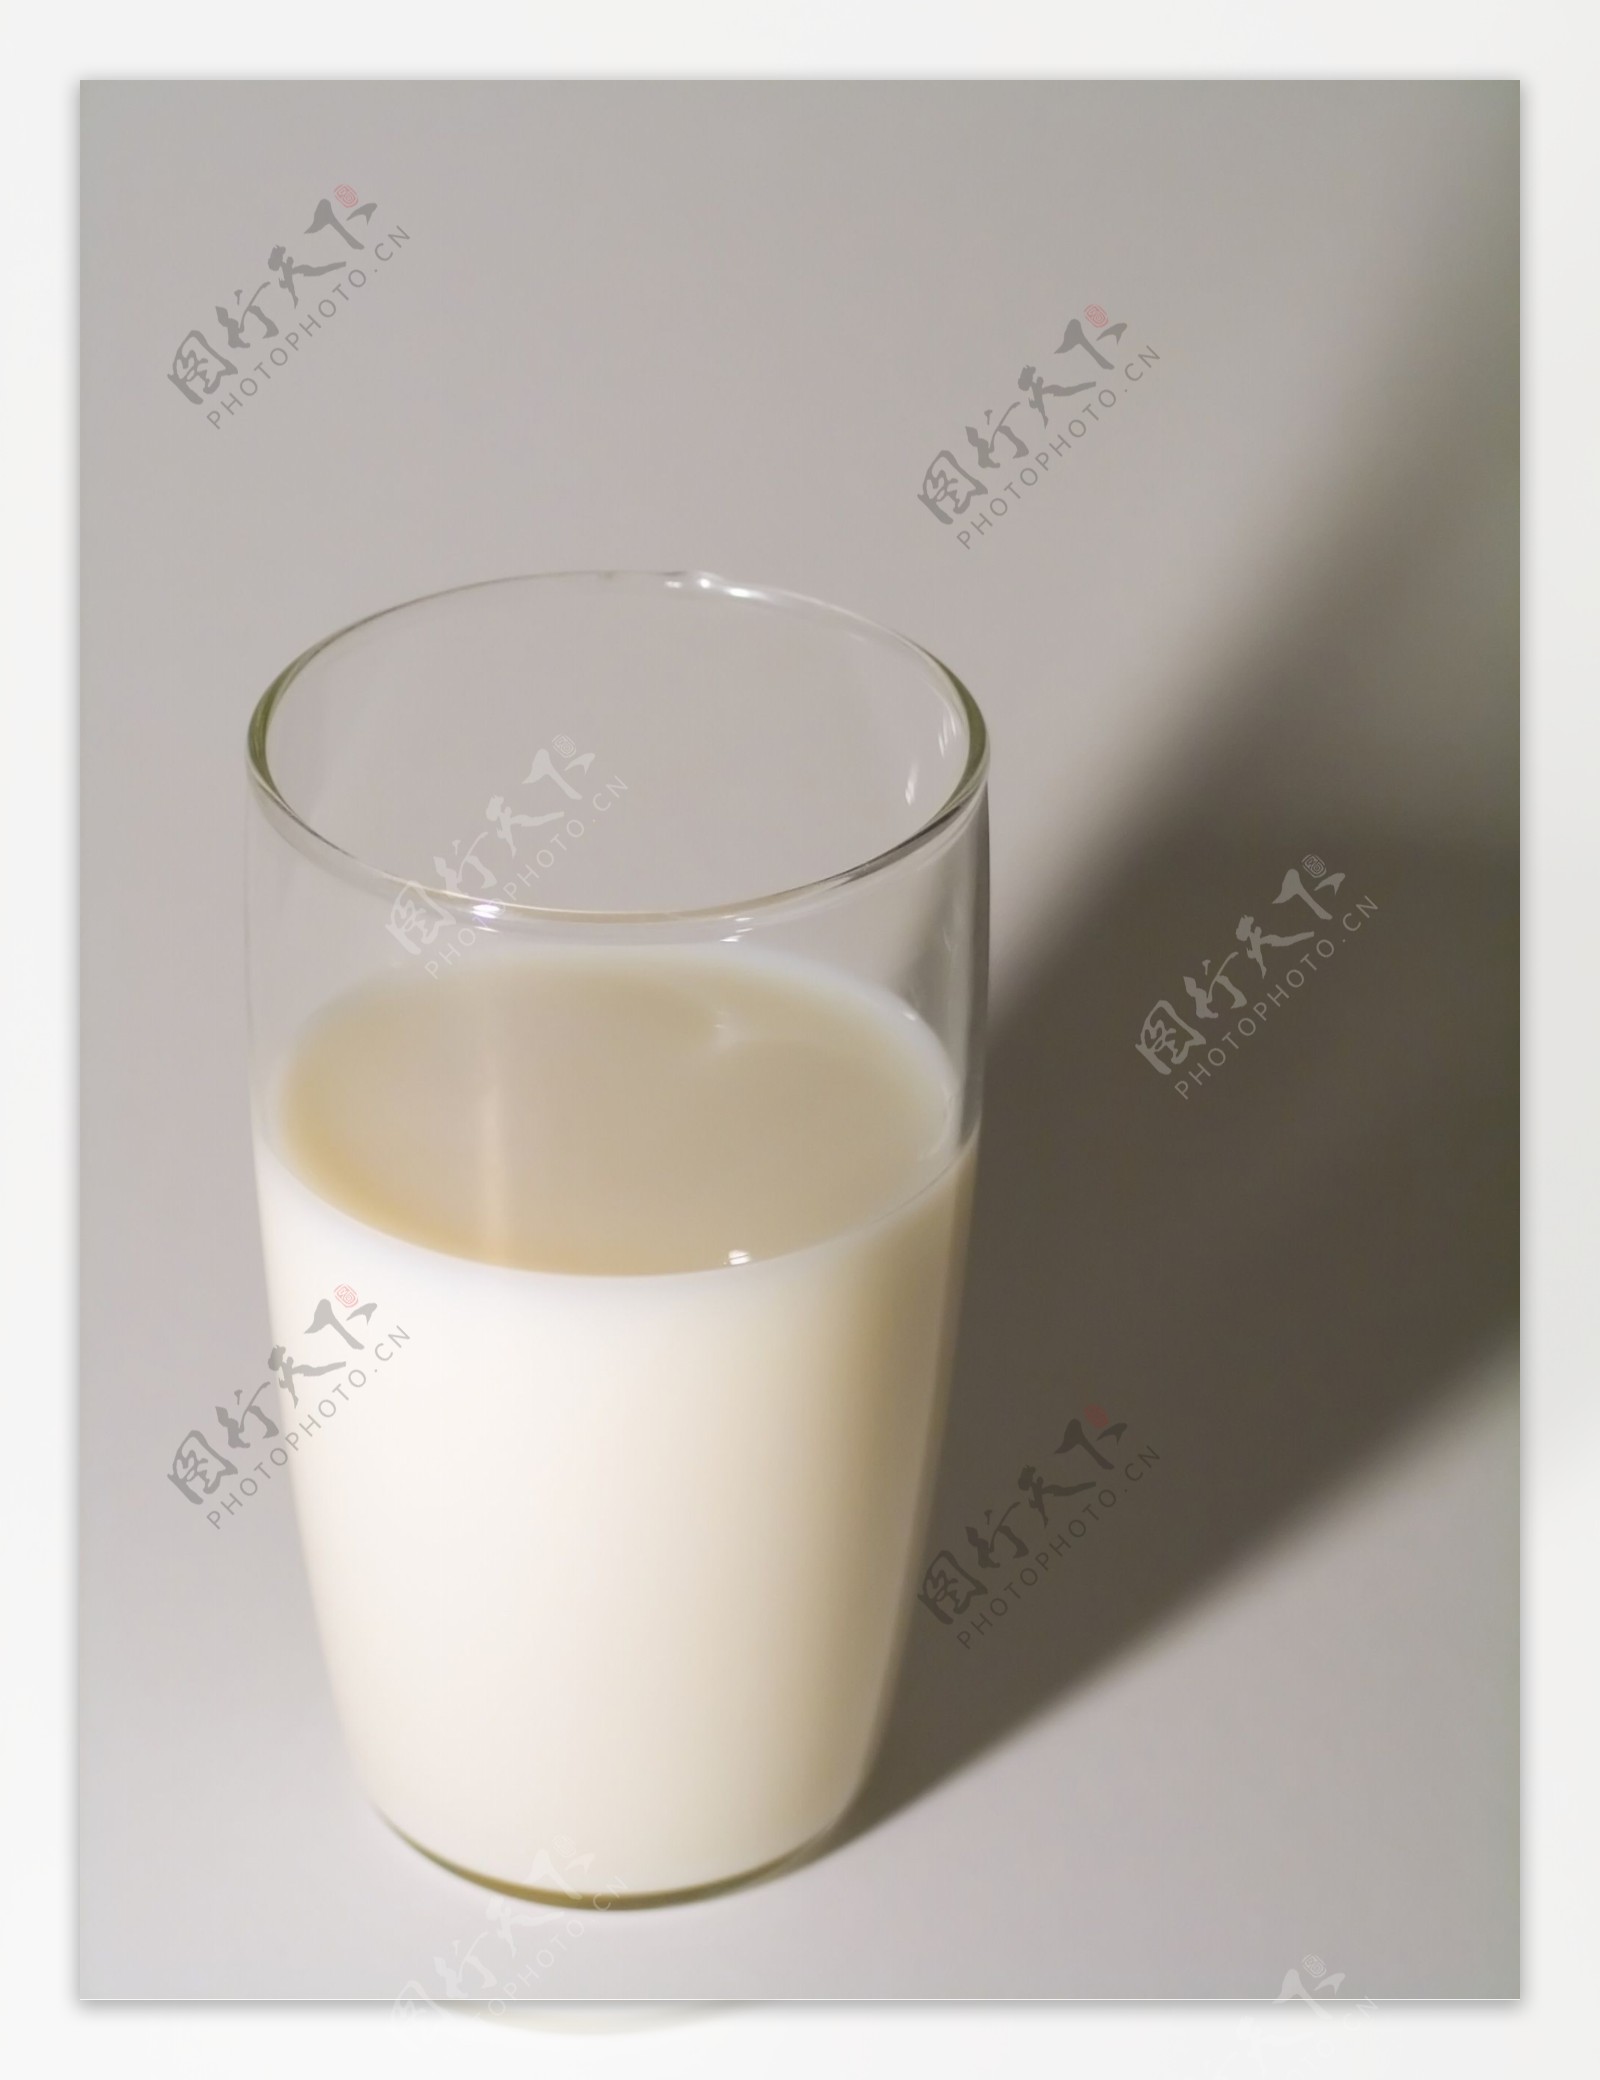 牛奶豆浆图片